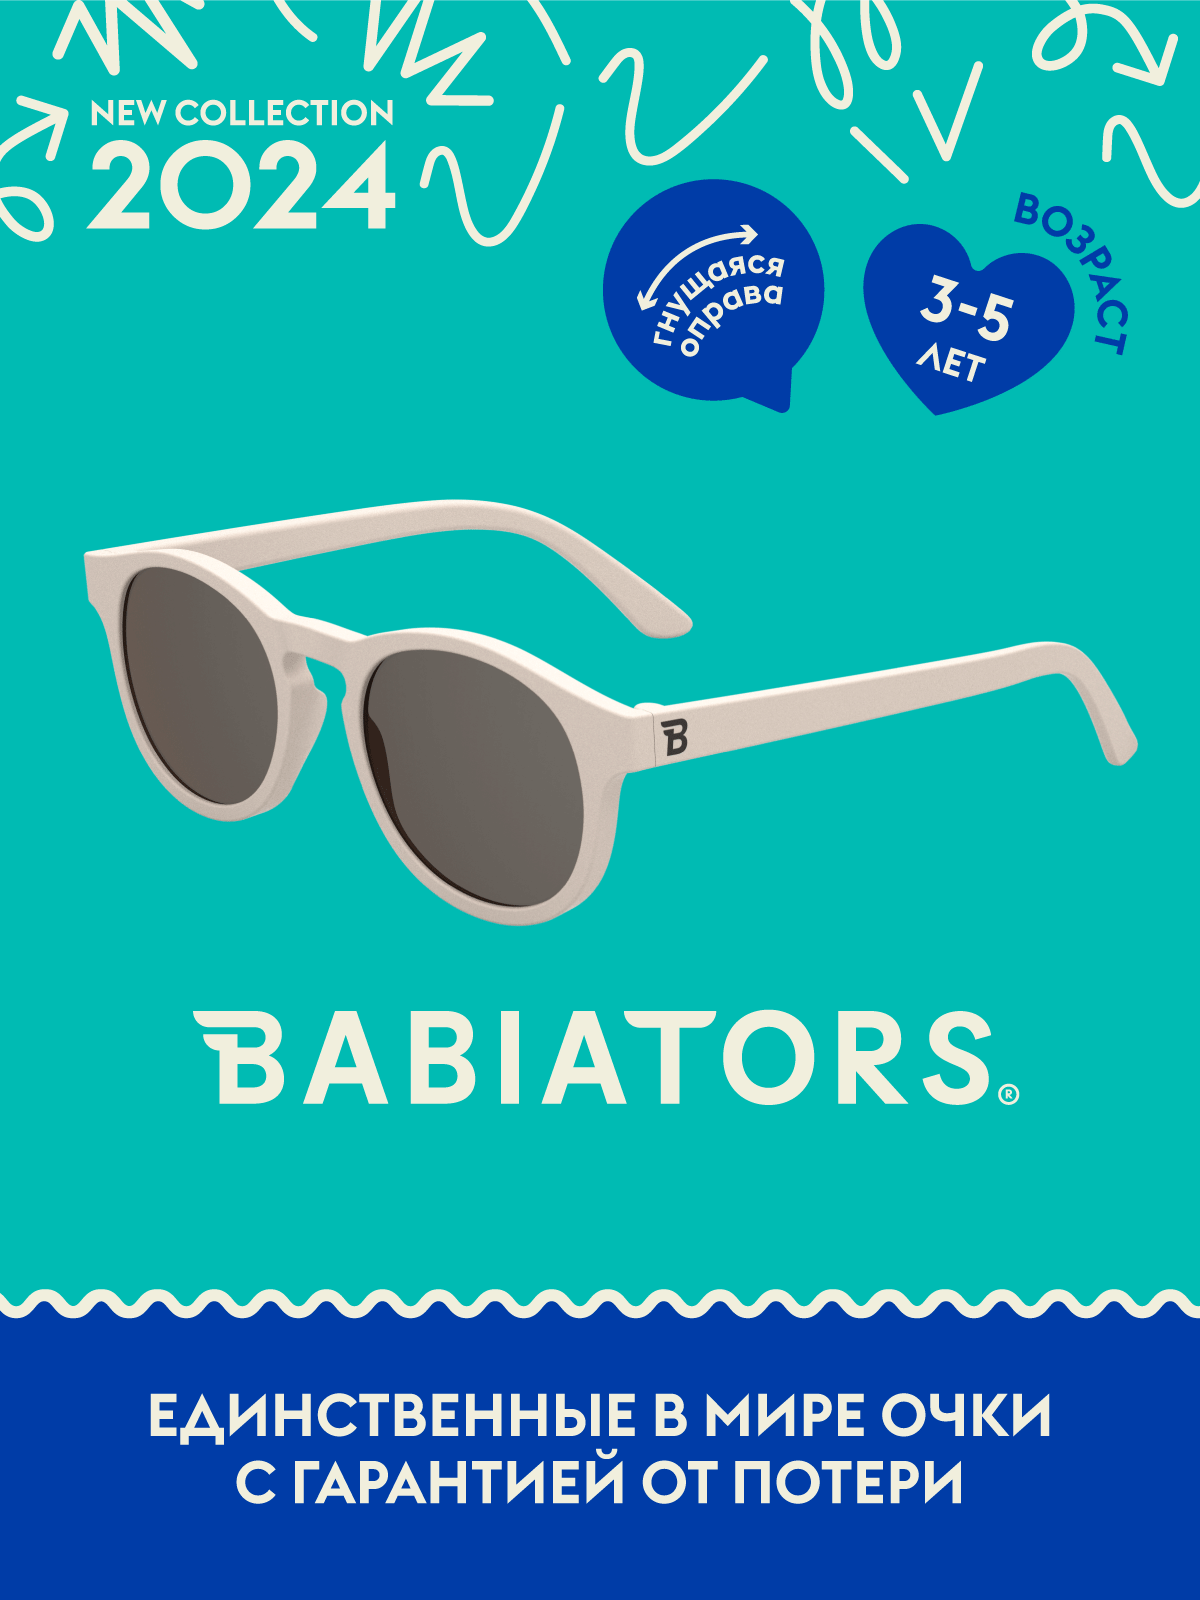 Очки Babiators Original Keyhole солнцезащитные Сладкие сливки (3-5) O-KEY011-M